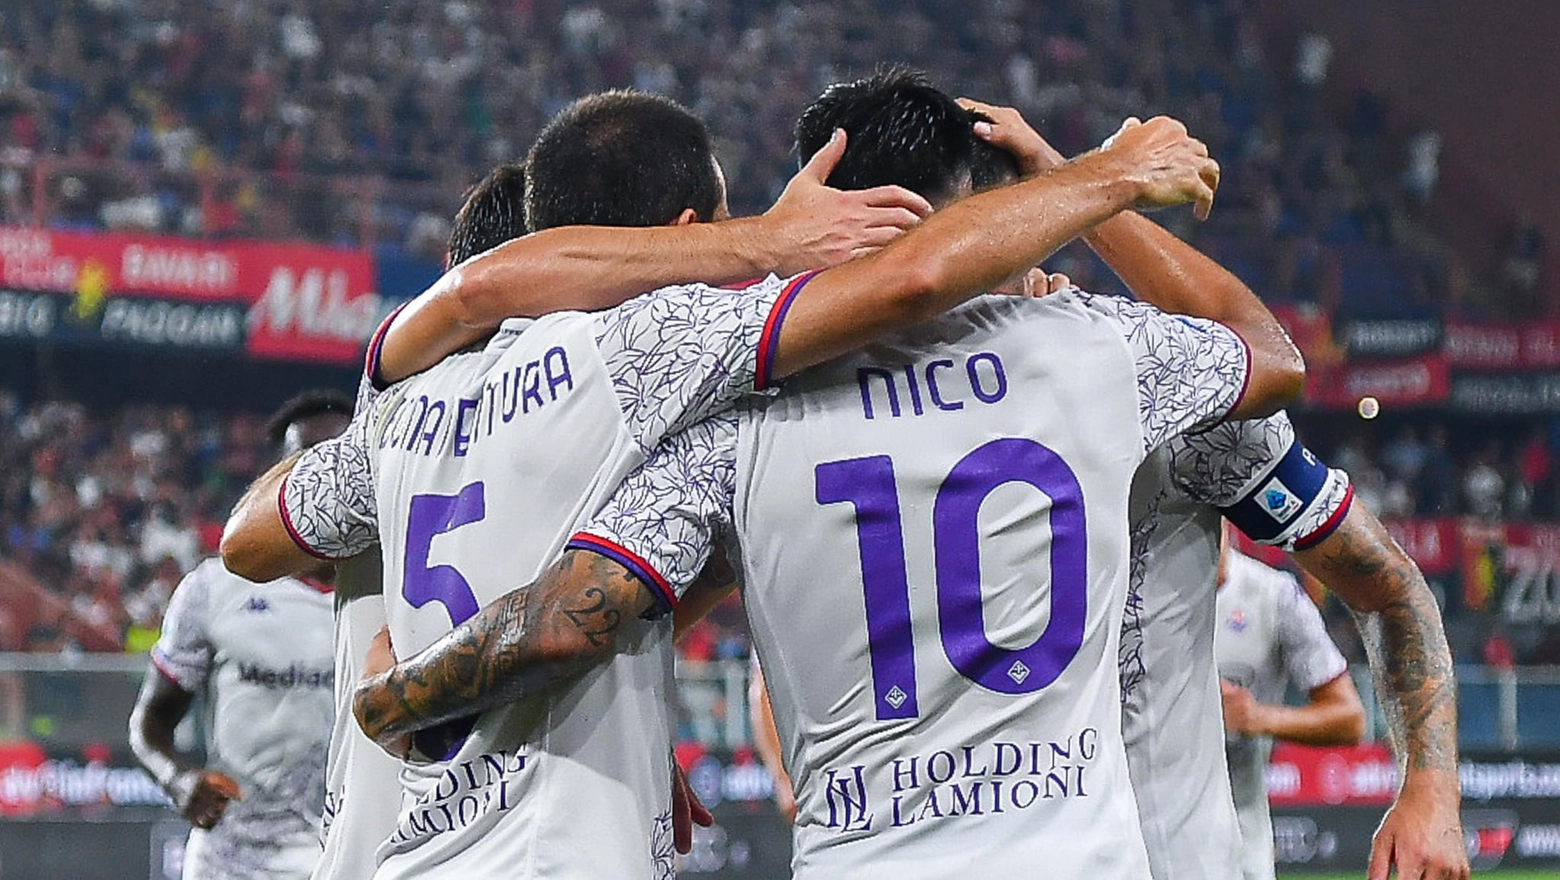 L'abbraccio viola al termine di Genoa-Fiorentina (Foto Ansa)